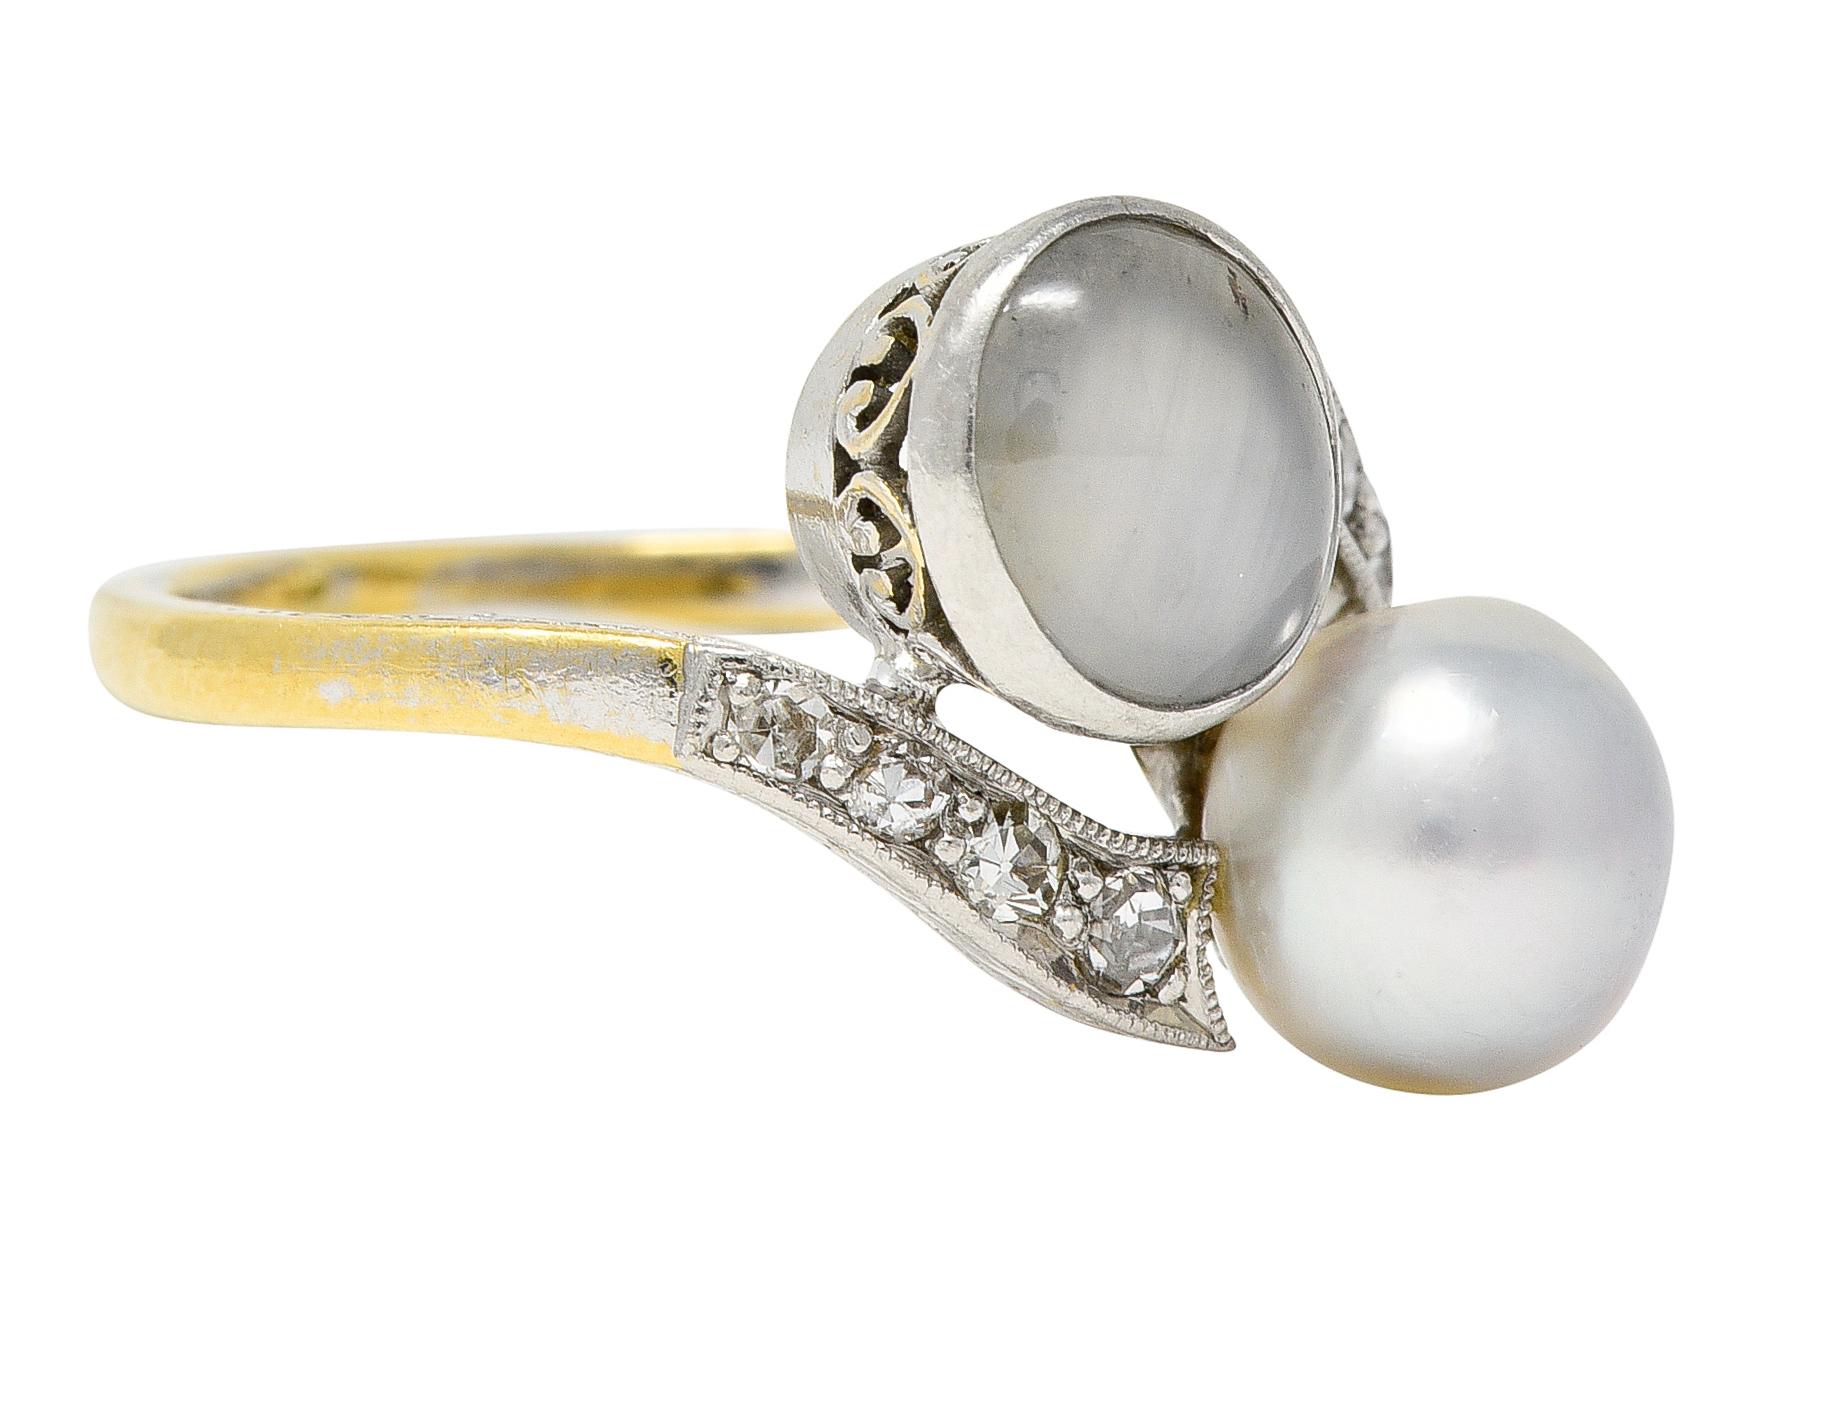 Bypass-Stil mit einem ovalen Mondstein-Cabochon von 5,0 x 7,0 mm und einer runden Naturperle von 7,0 mm.  Sapphire hat eine durchscheinende graue Körperfarbe mit dezentem weißen Asterismus. Die Perle hat eine weiße Körperfarbe mit mäßigem Schillern.